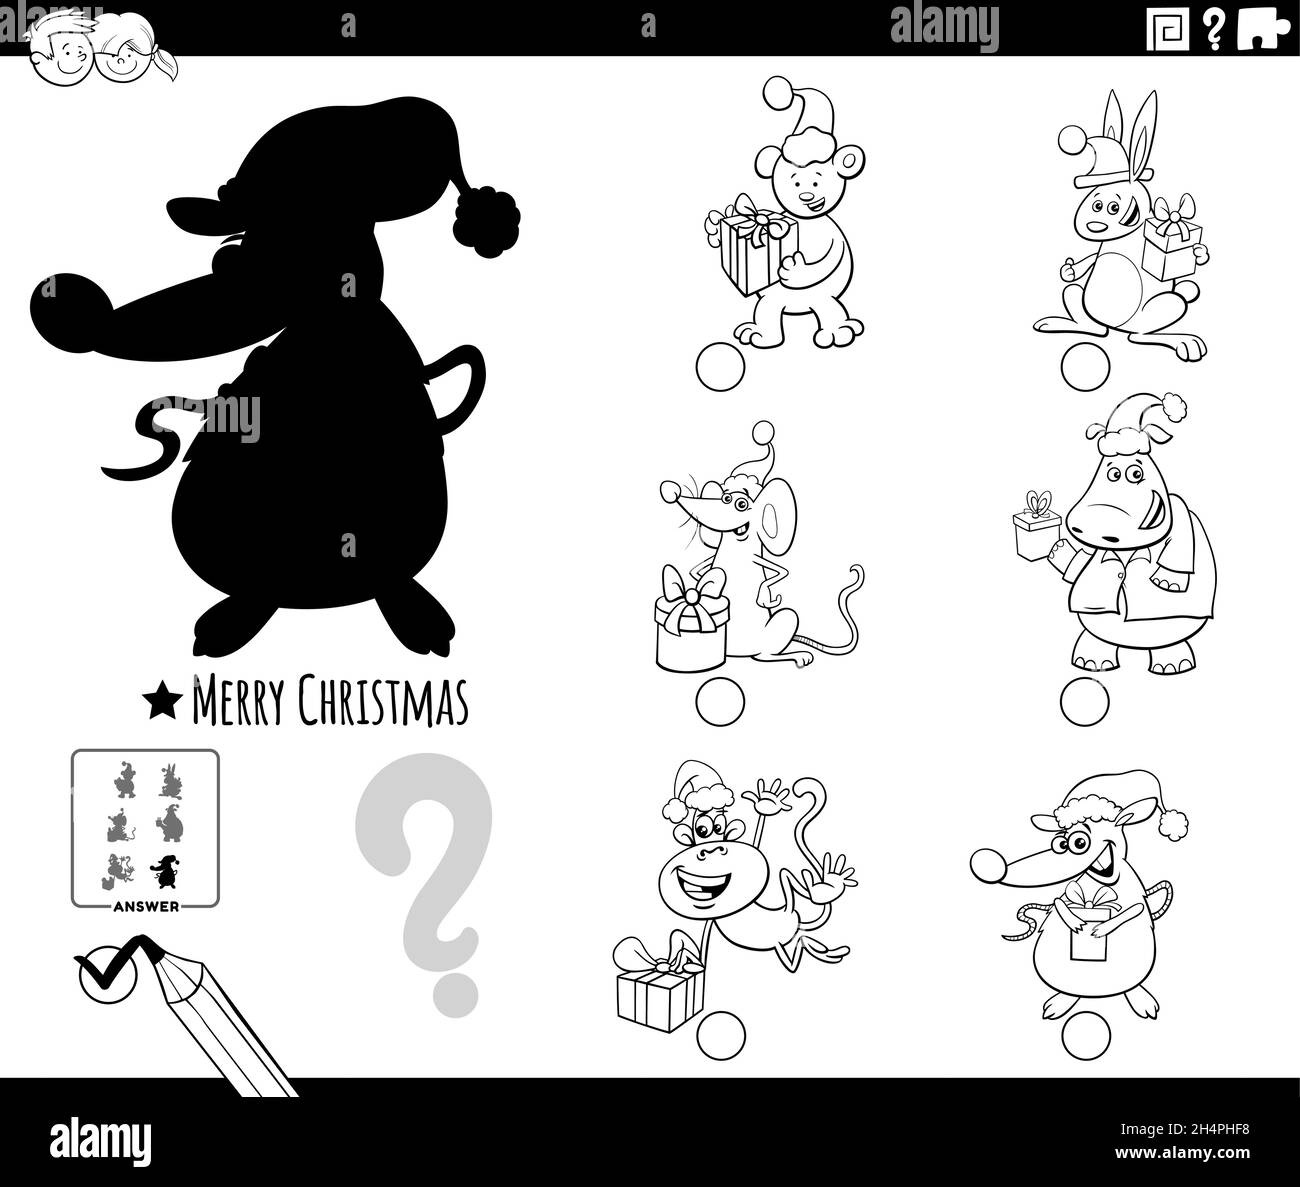 Schwarz-Weiß-Cartoon-Illustration der Suche nach dem richtigen Bild für die Schatten pädagogische Aufgabe für Kinder mit Tieren Charaktere auf Weihnachten tim Stock Vektor